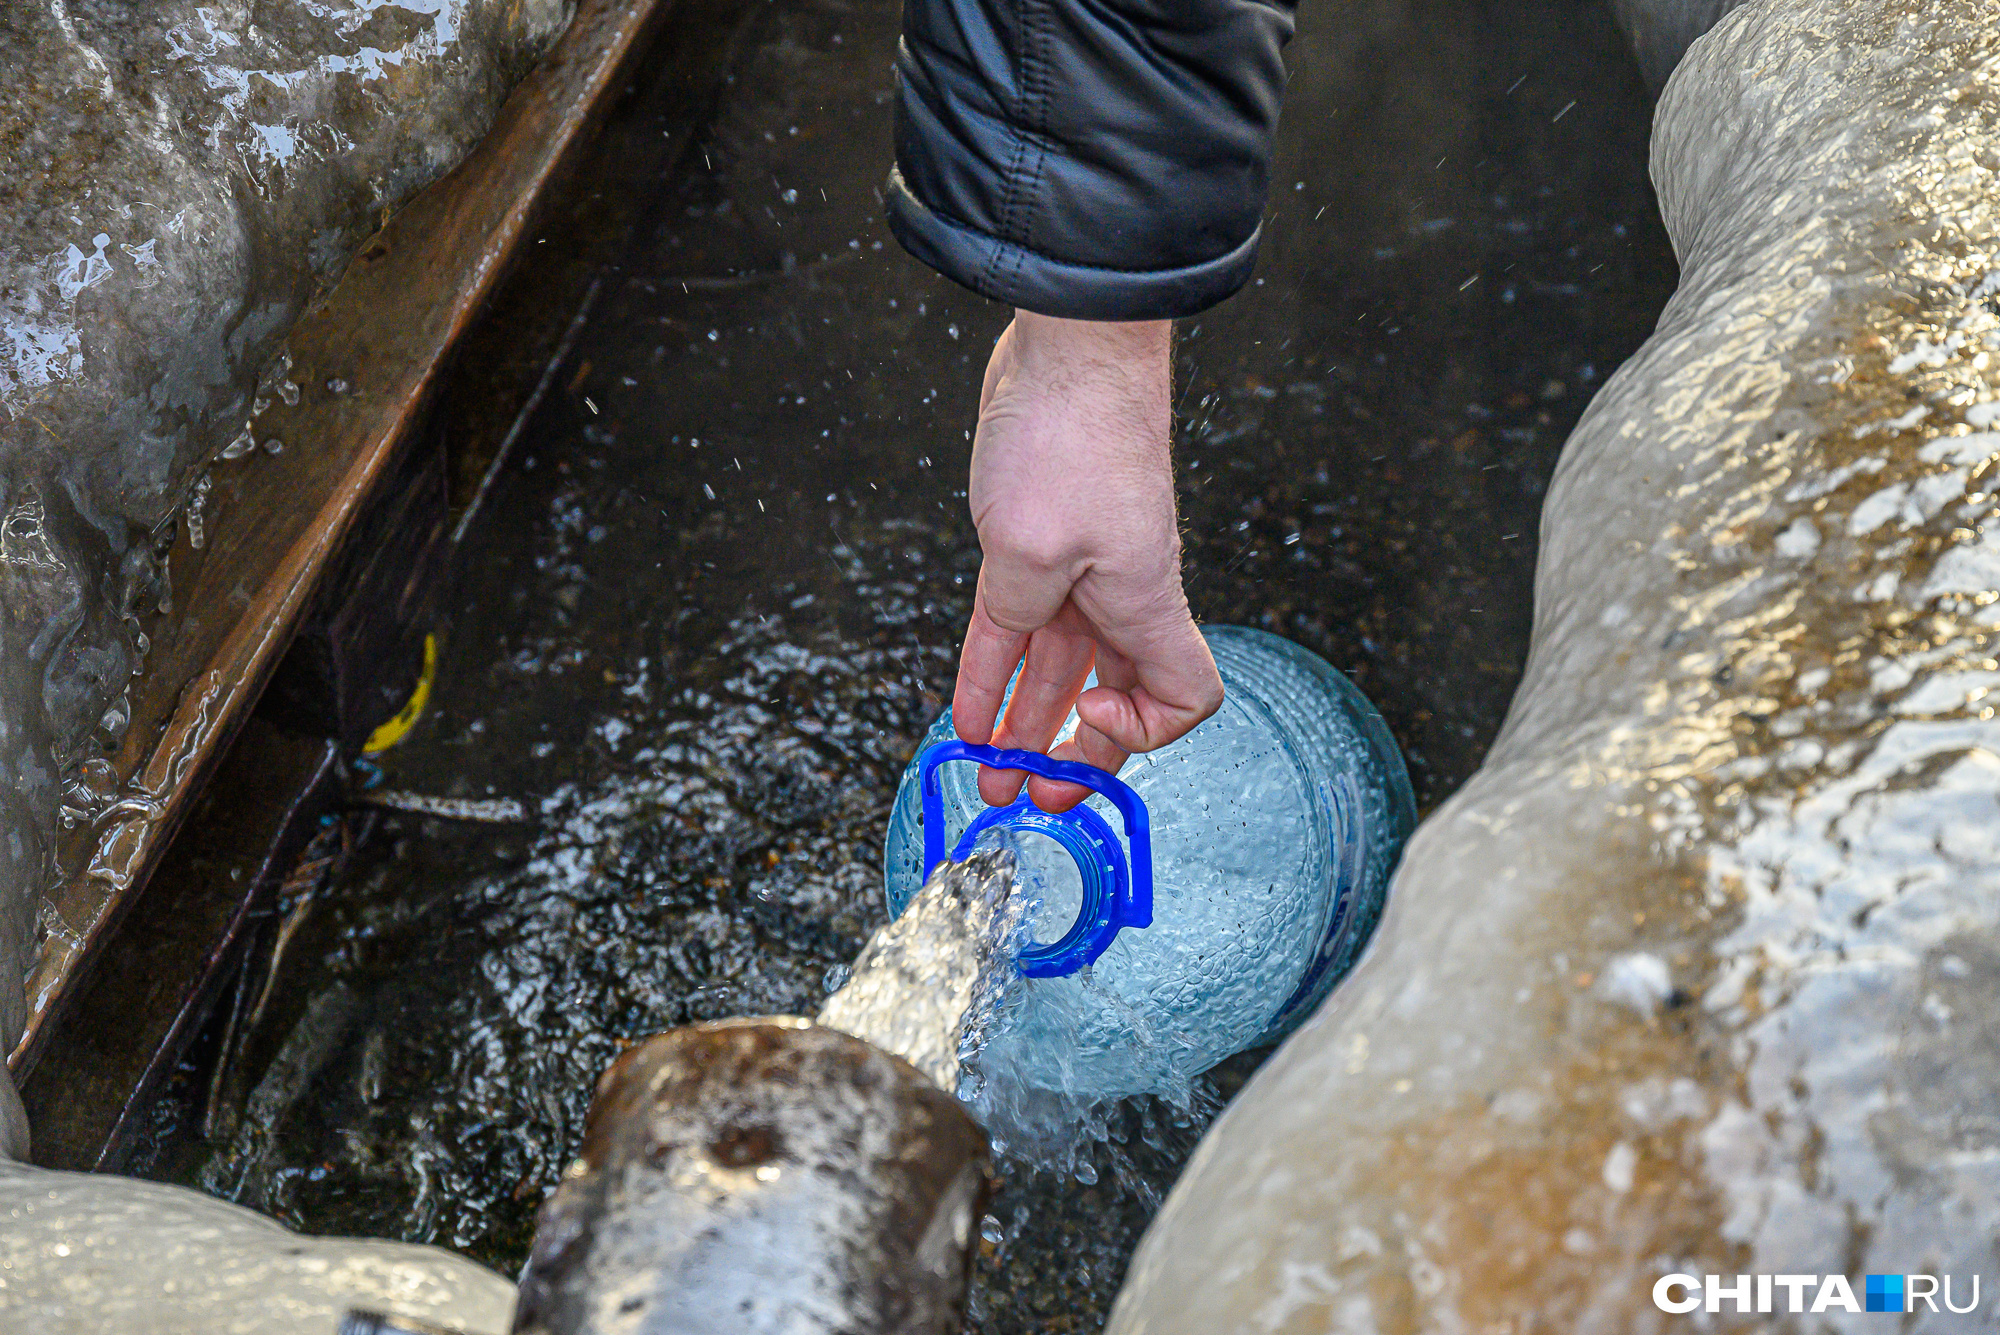 Роспотребнадзор проверил воду из источника в Карповке, где находили червя